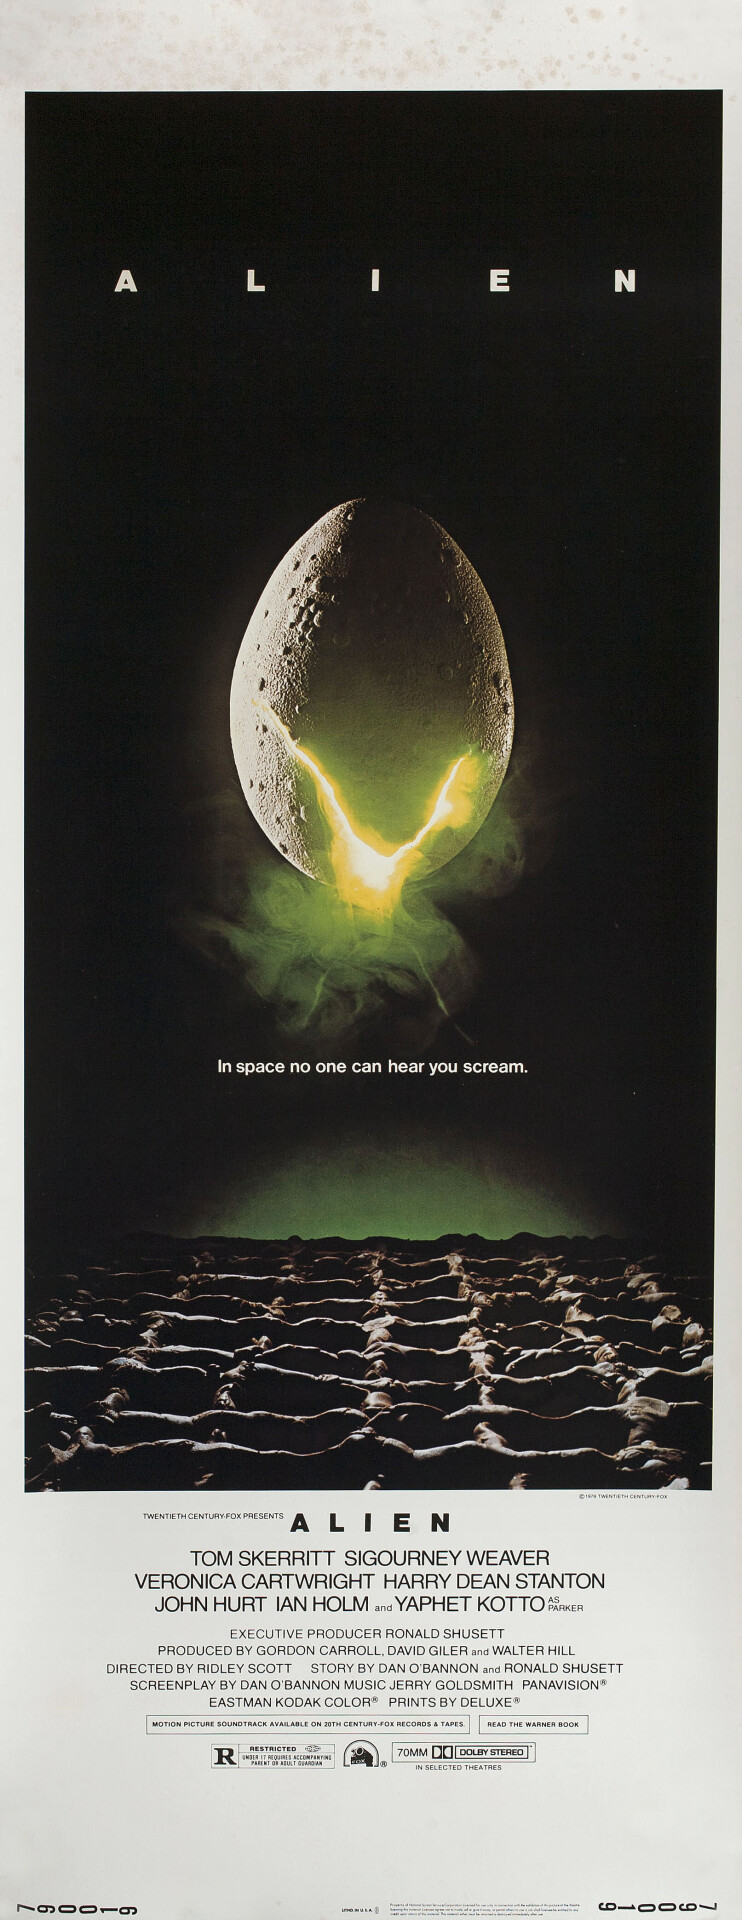 Чужой (Alien, 1979), режиссёр Ридли Скотт, американский постер к фильму (ужасы, 1979 год) (1)